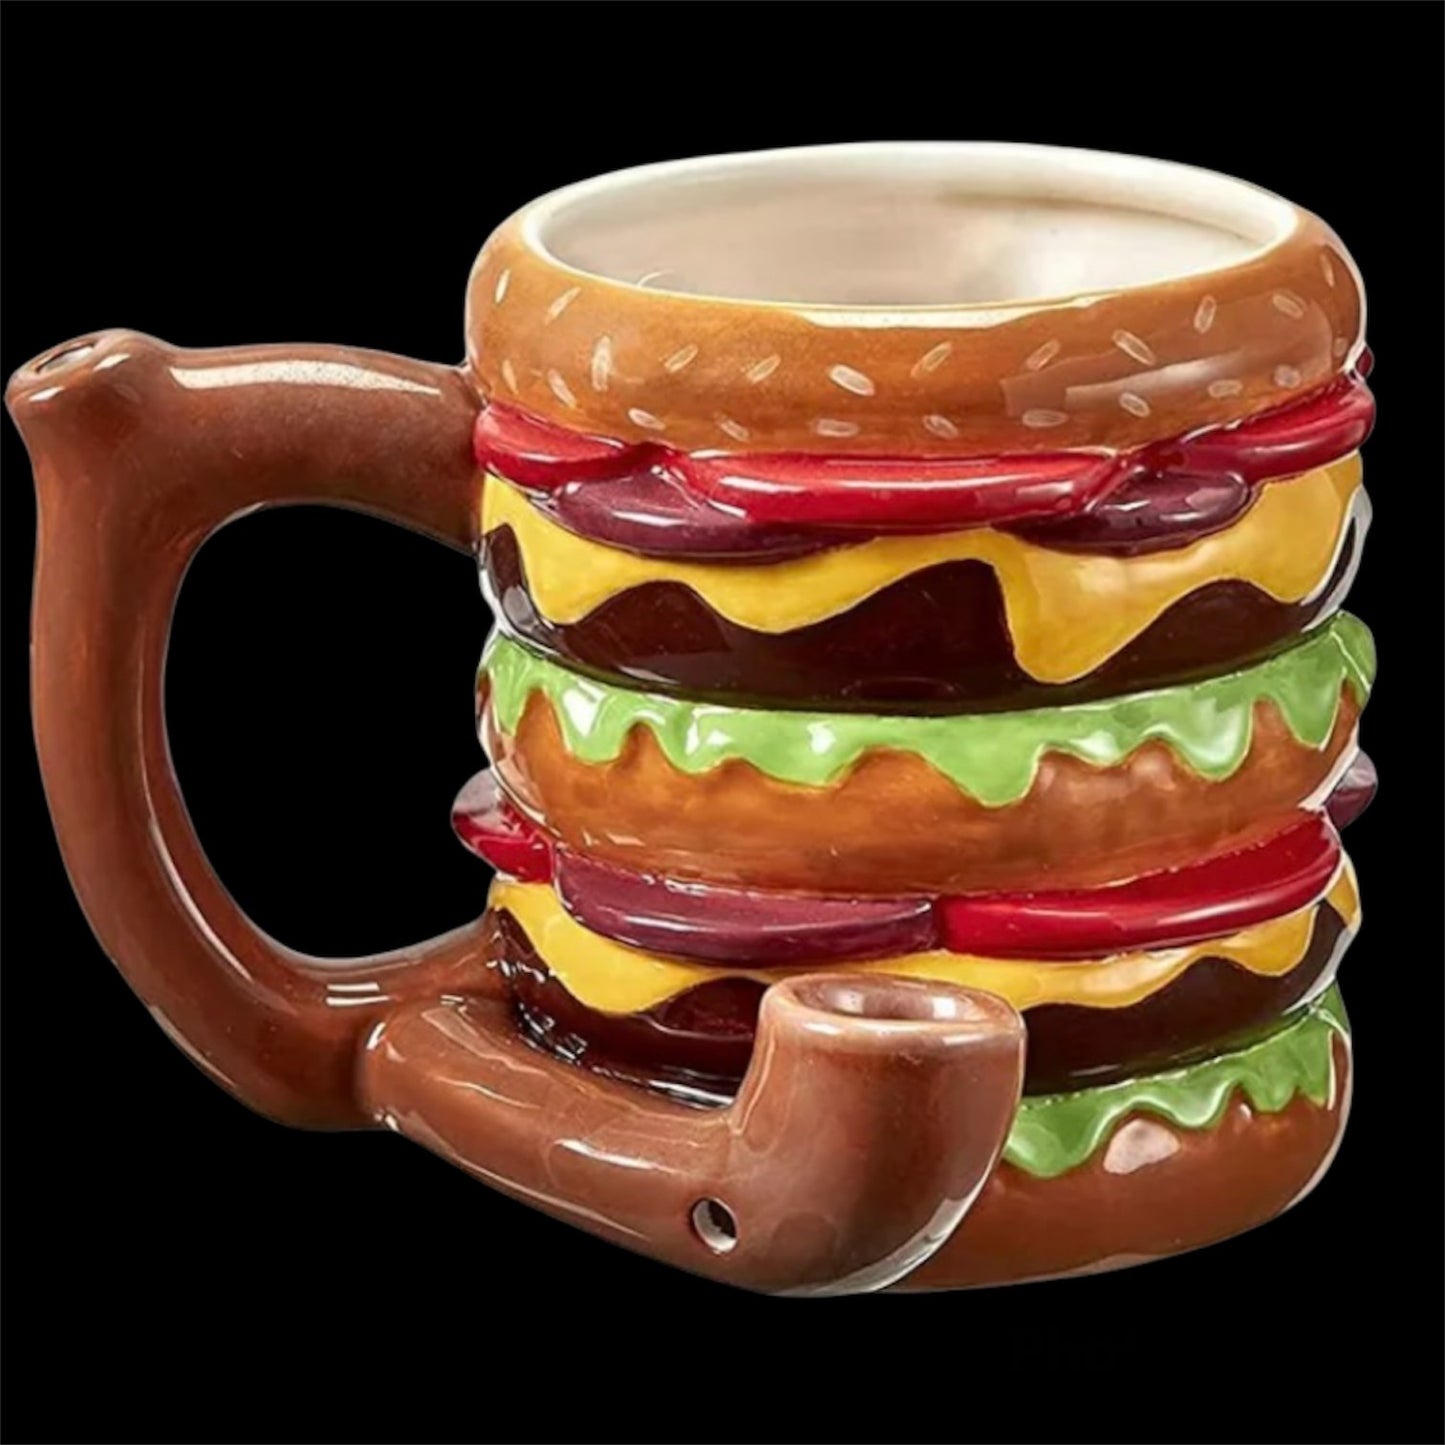 Cheeseburger ceramic mug pipes